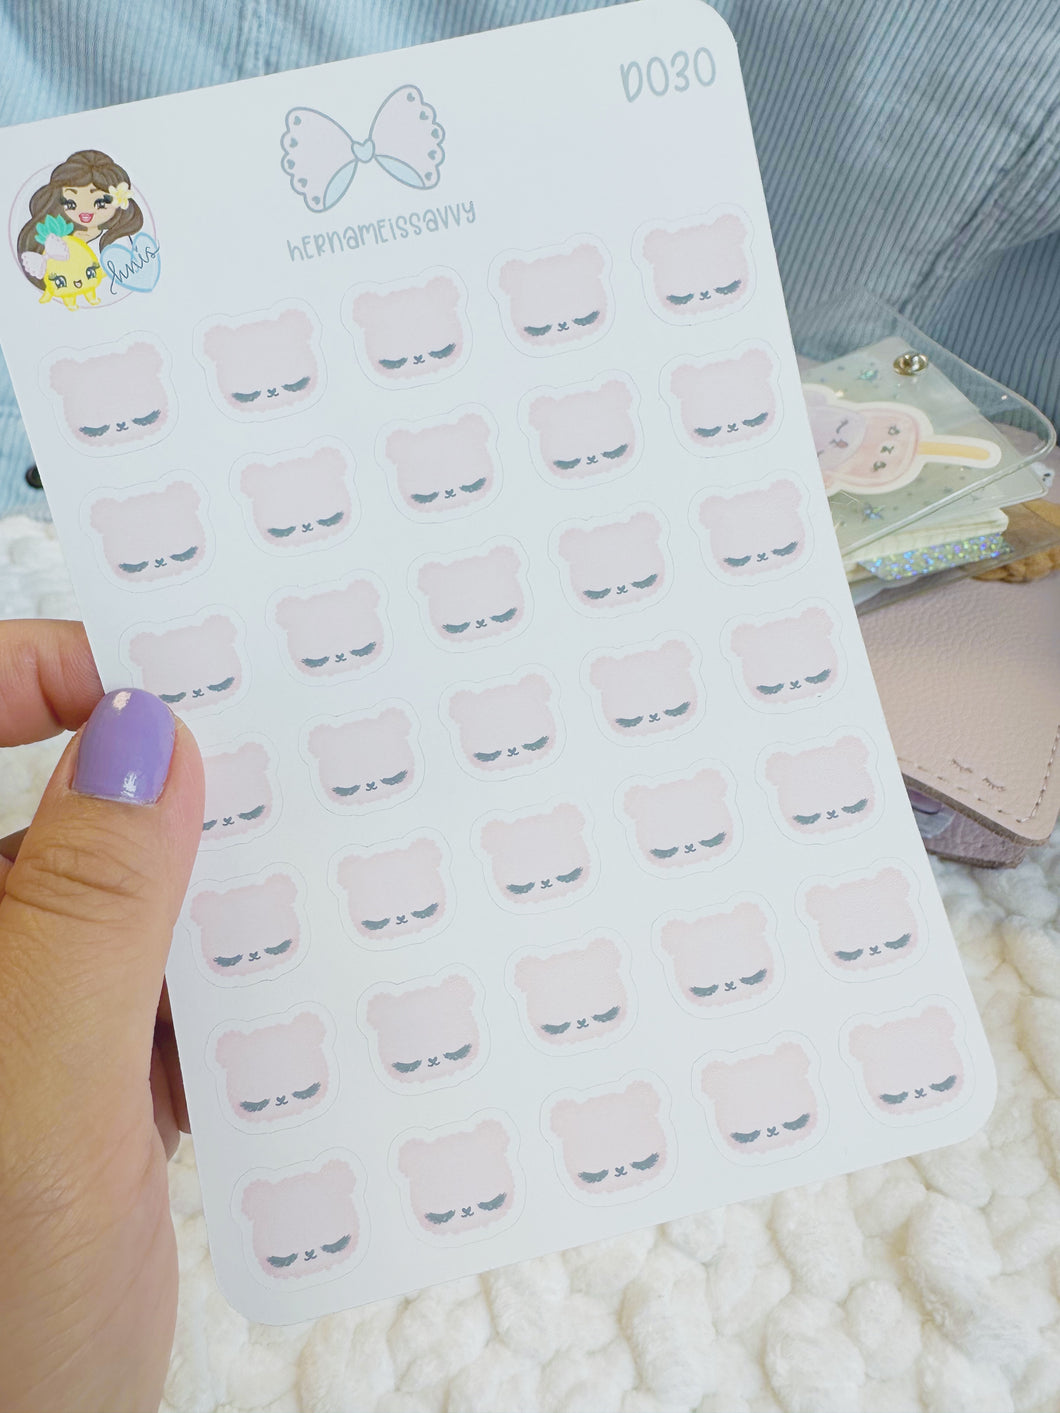 D030 - Pink Bear Faces Sticker Sheet